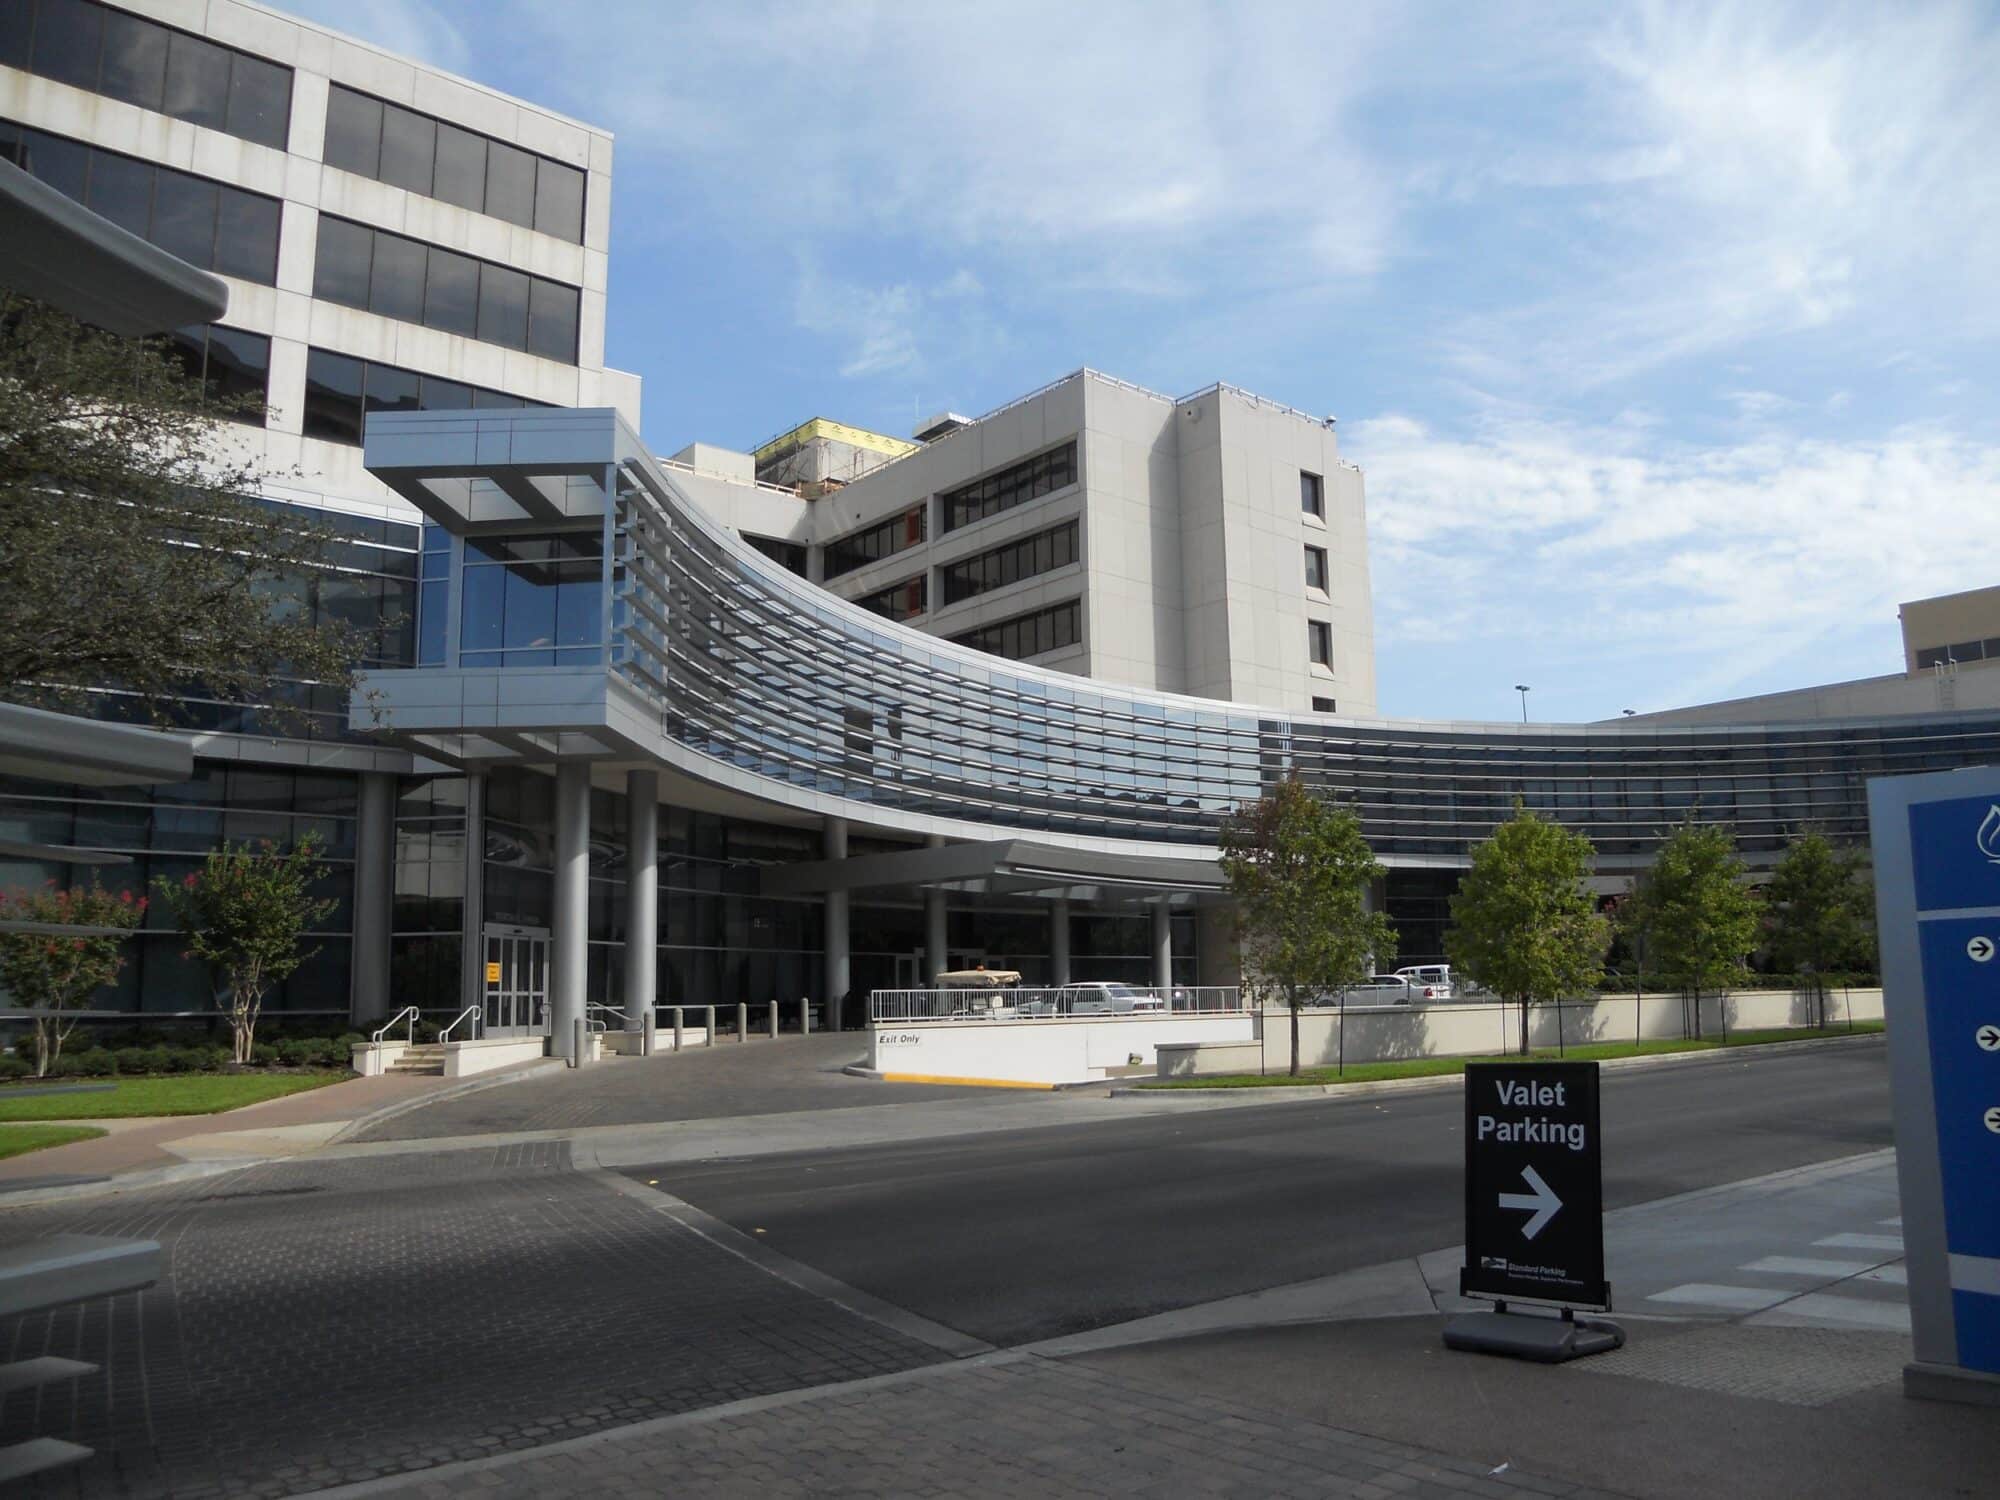 Modern hospital building with valet parking sign.